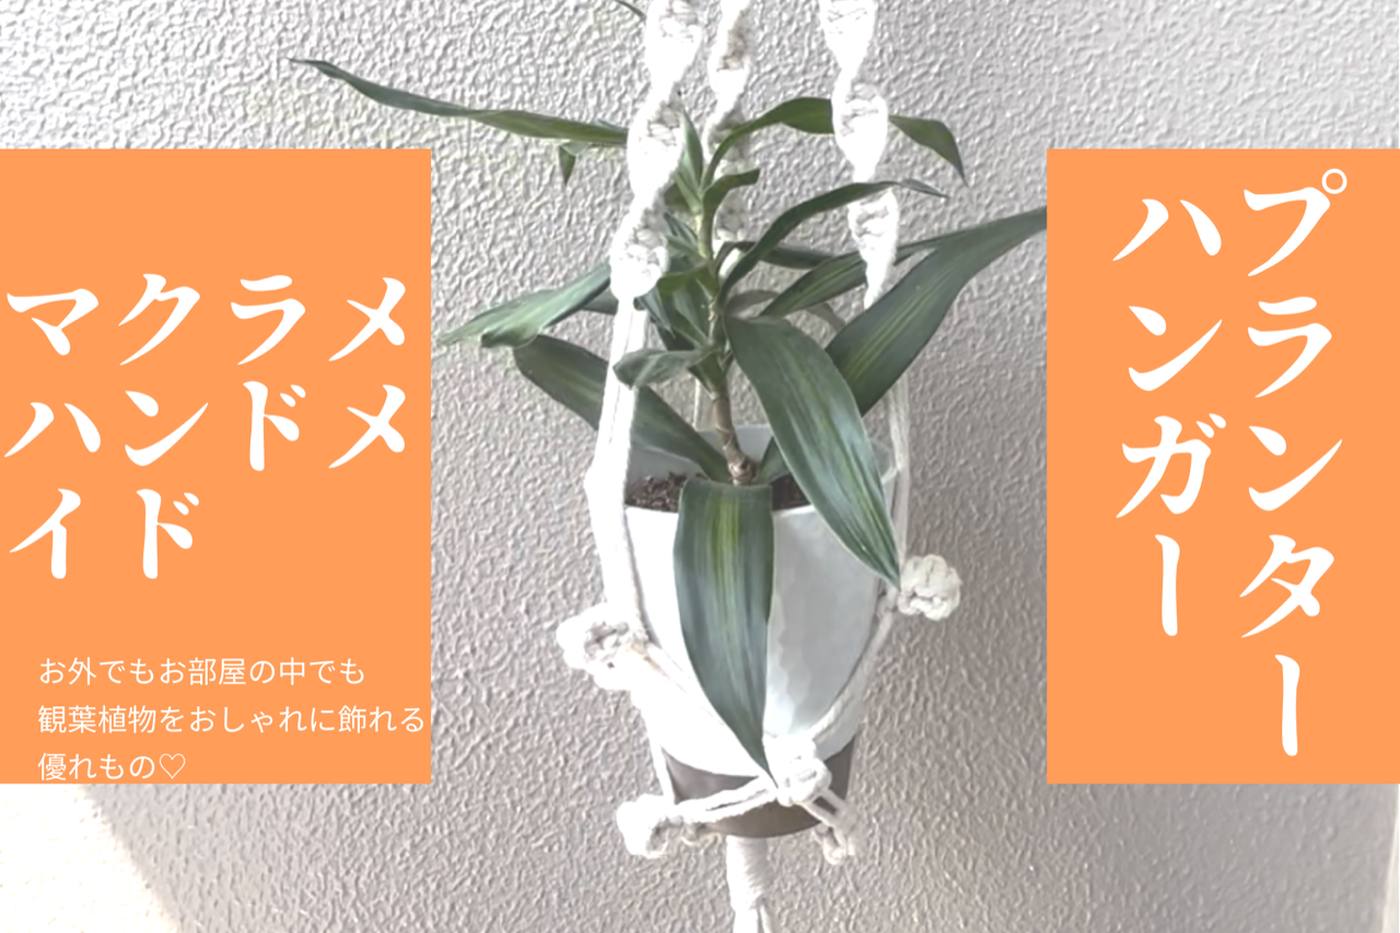 【ハンドメイド】お部屋に植物を飾れる♡ マクラメプランターハンガーの作り方 image